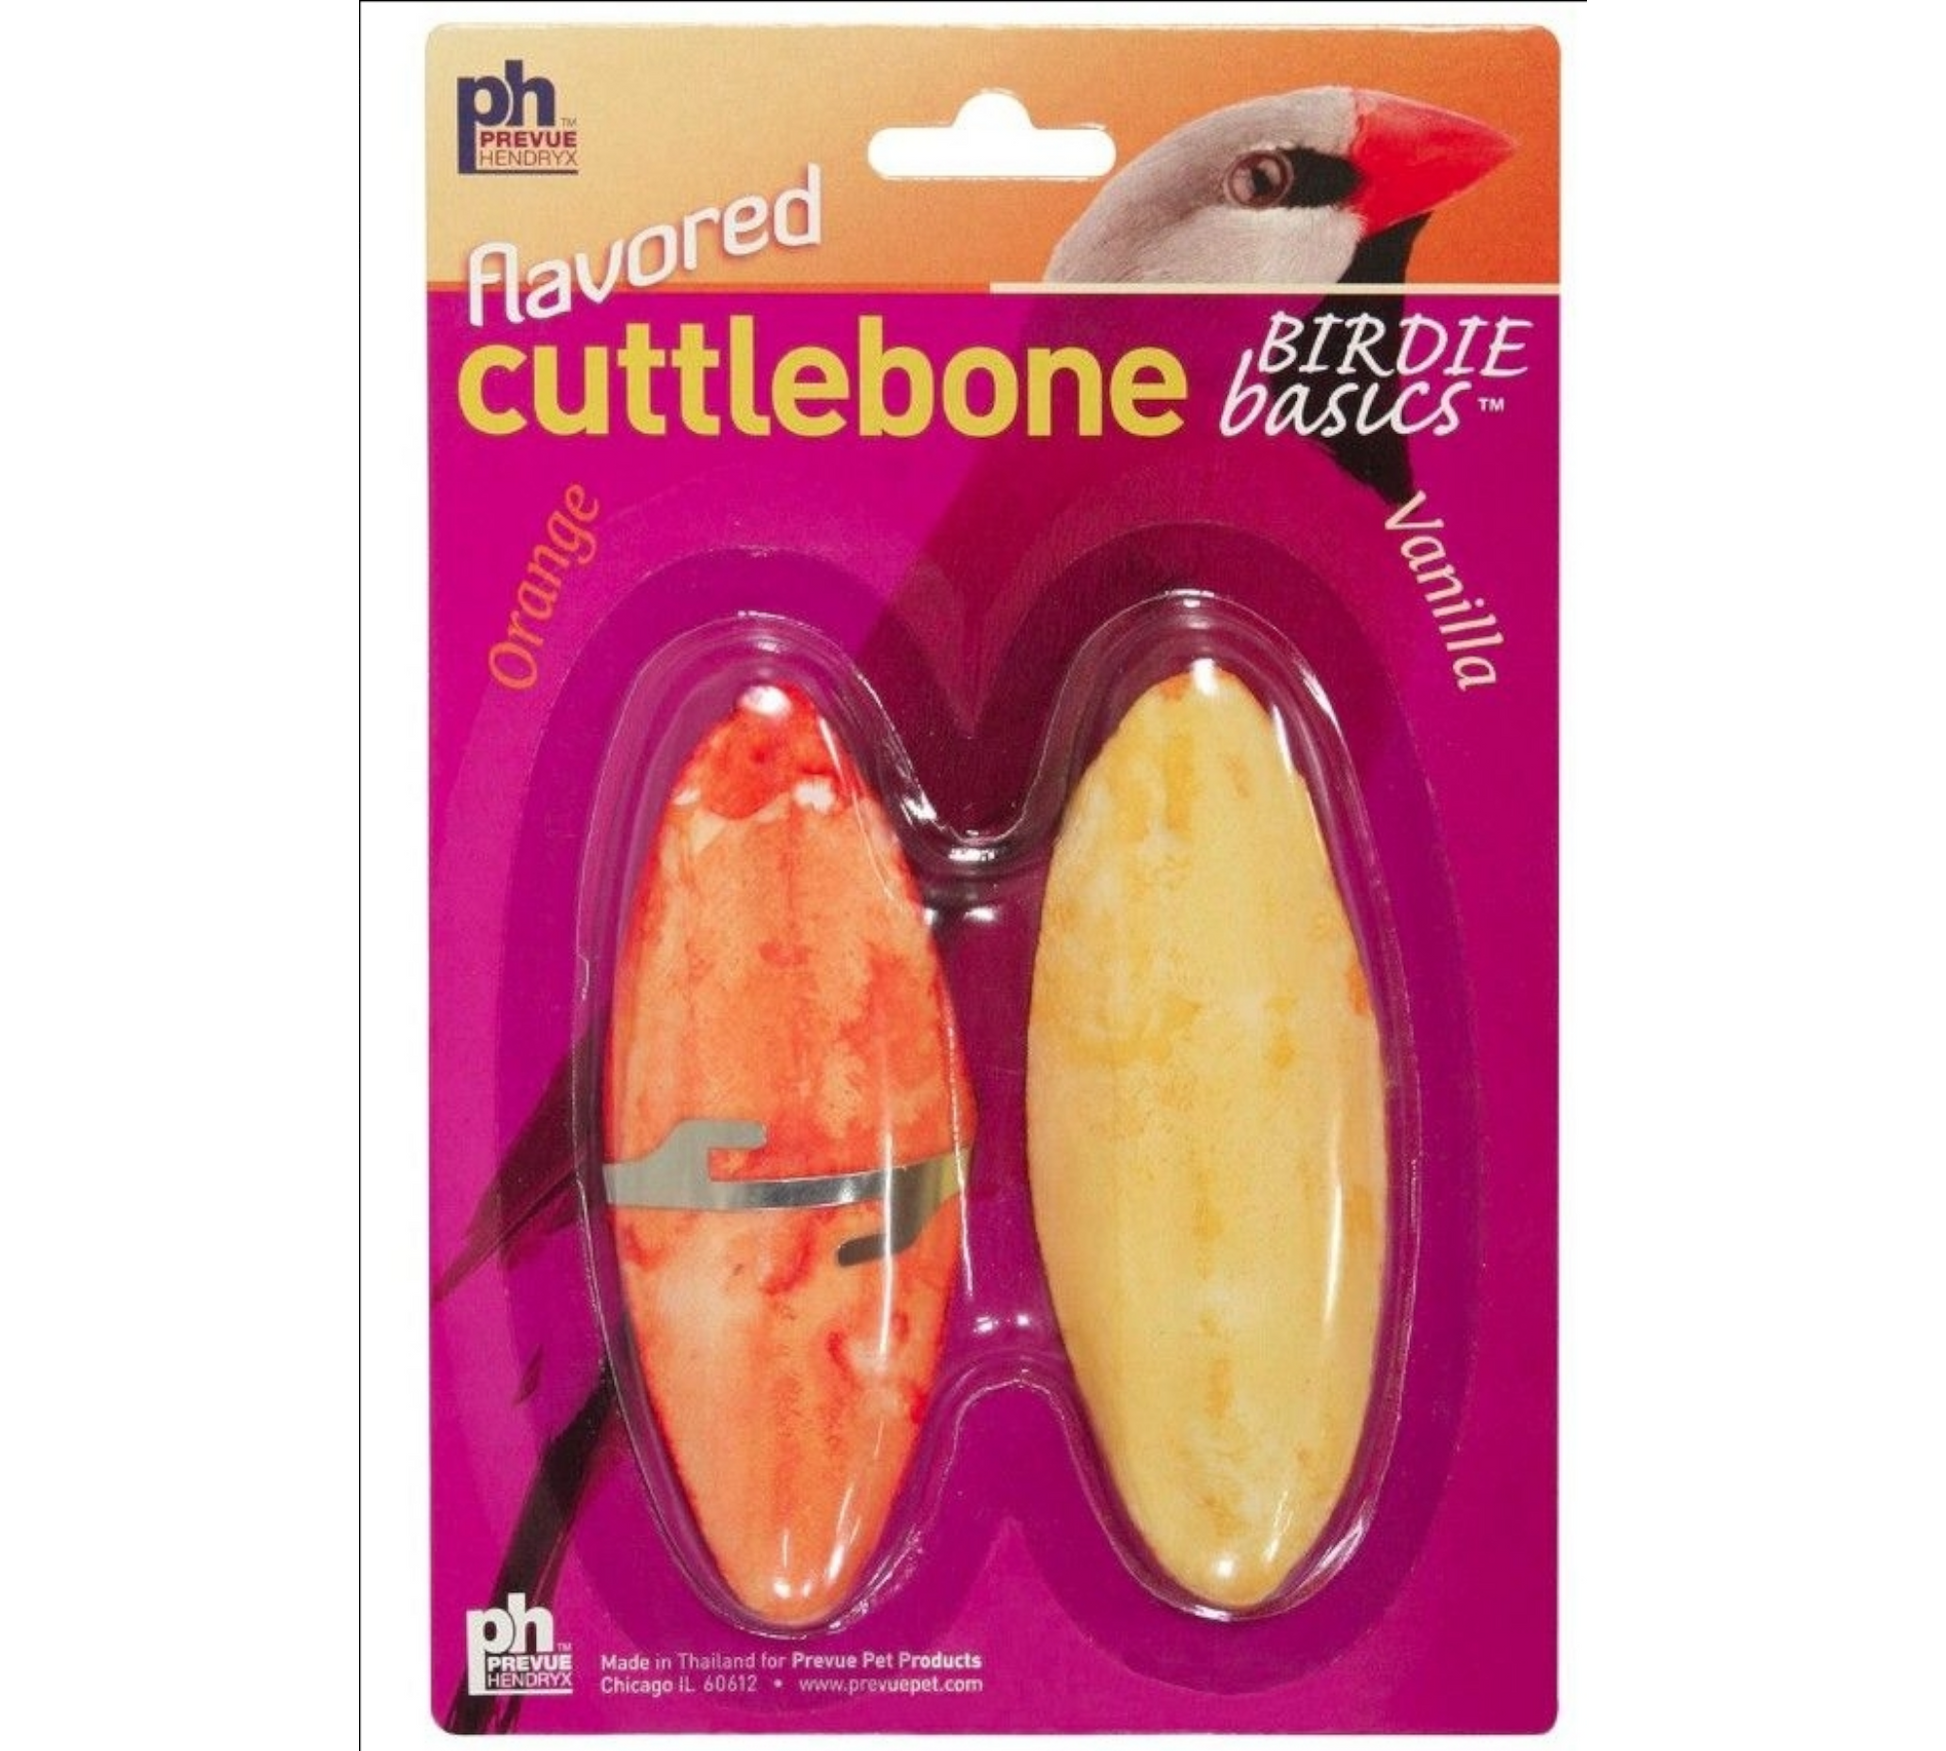 Canine's World Bird Cuttlebones Prevue Birdie Basics Flavored Cuttlebone Orange and Vanilla, 2 Count Prevue